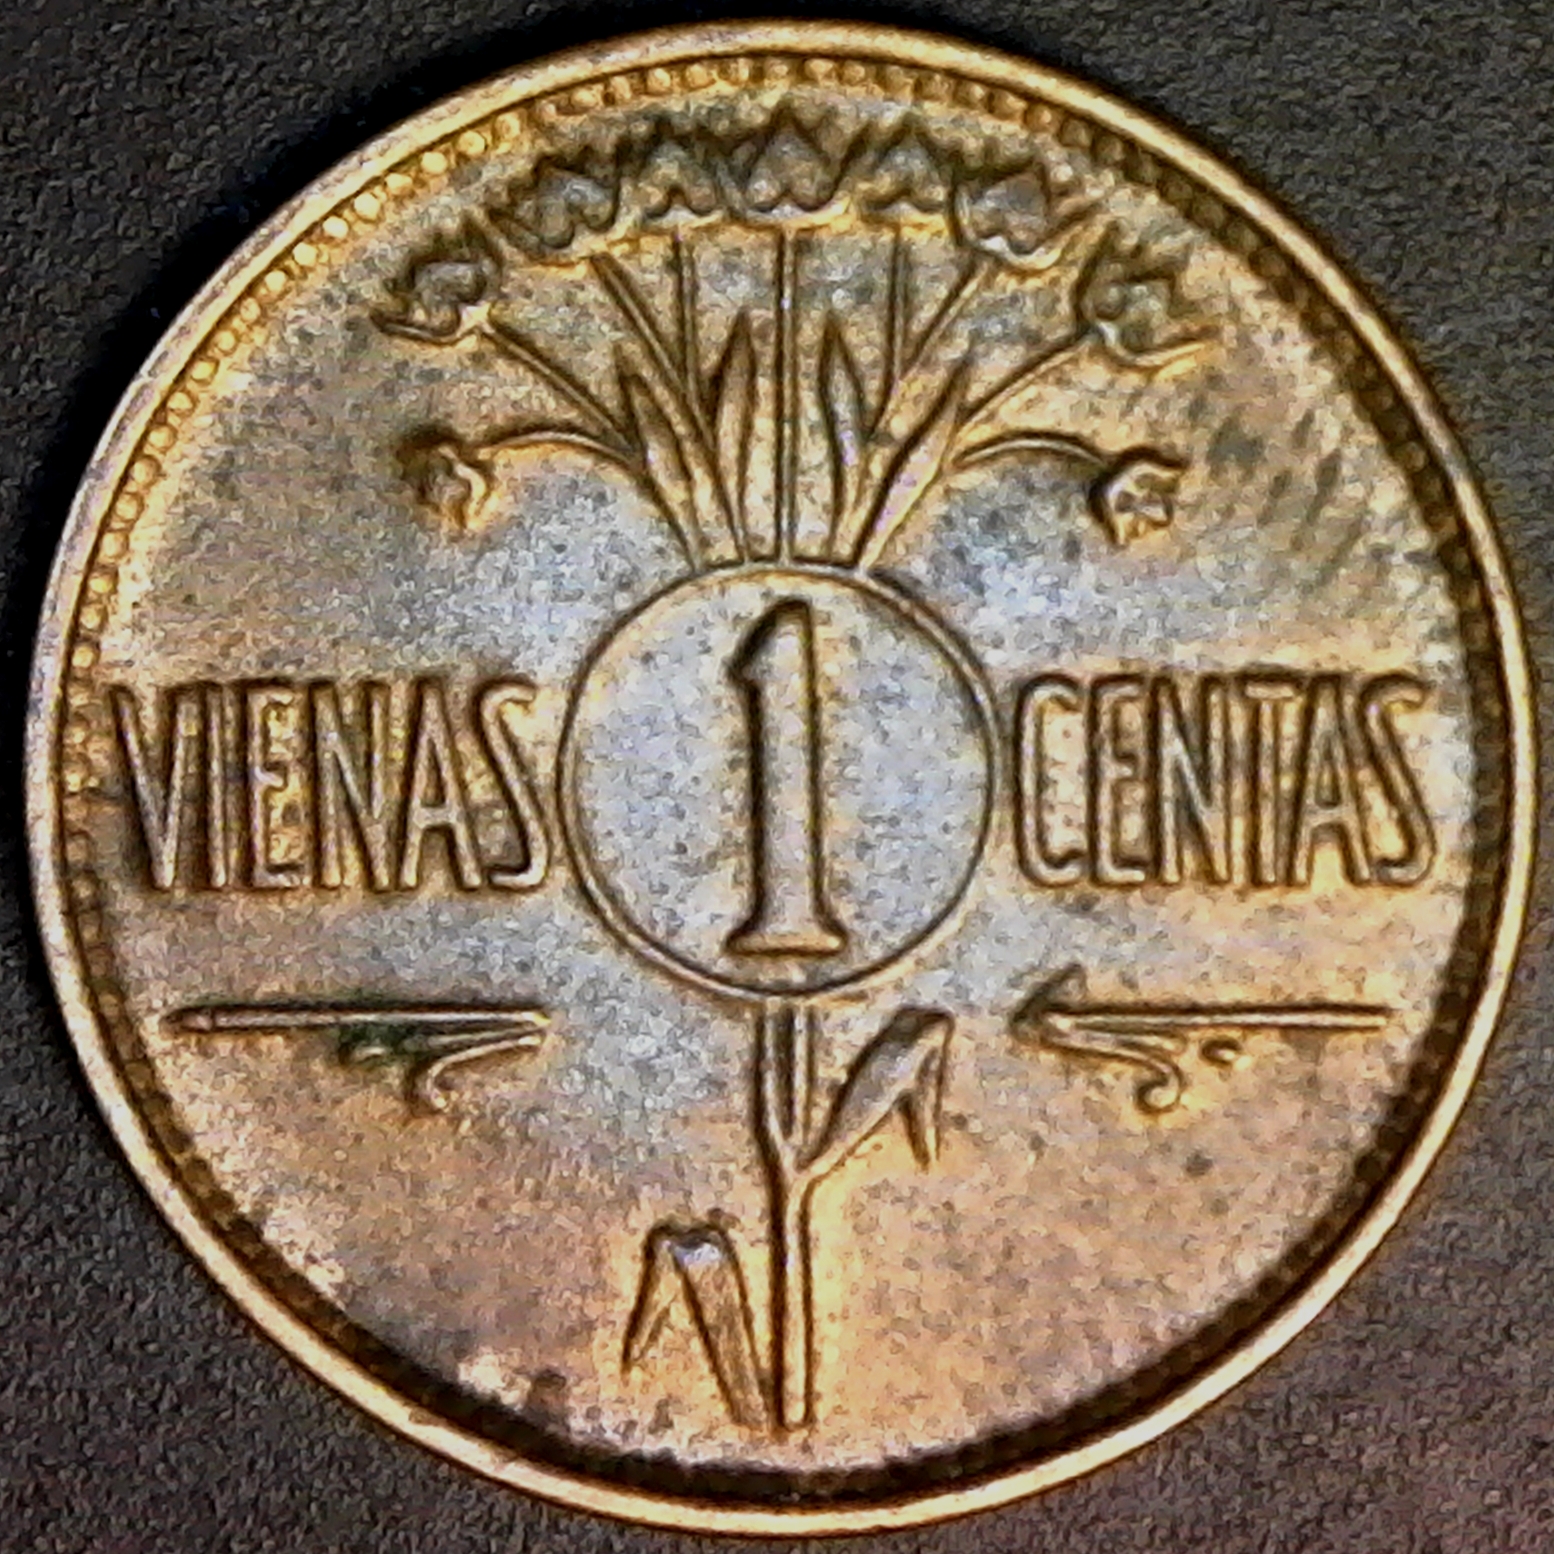 Lithuania 1 Centas 1925 rev.jpg